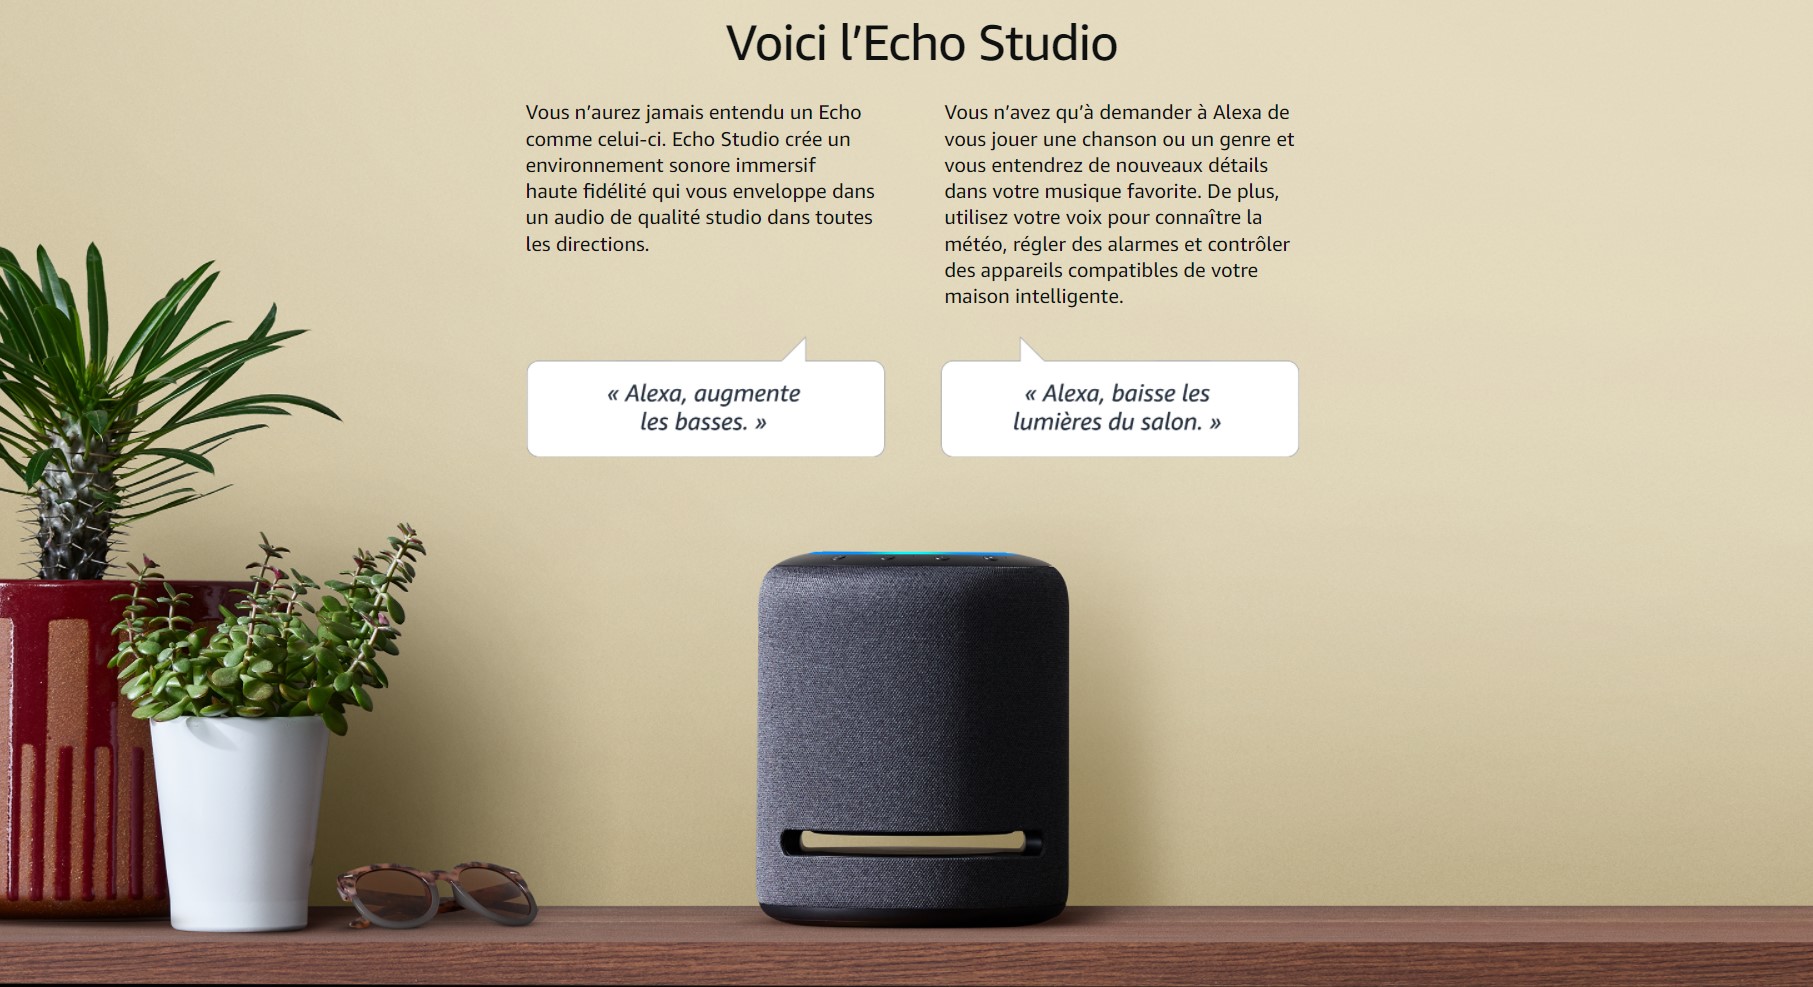 haut-parleur pour téléviseur Echo studio Amazon